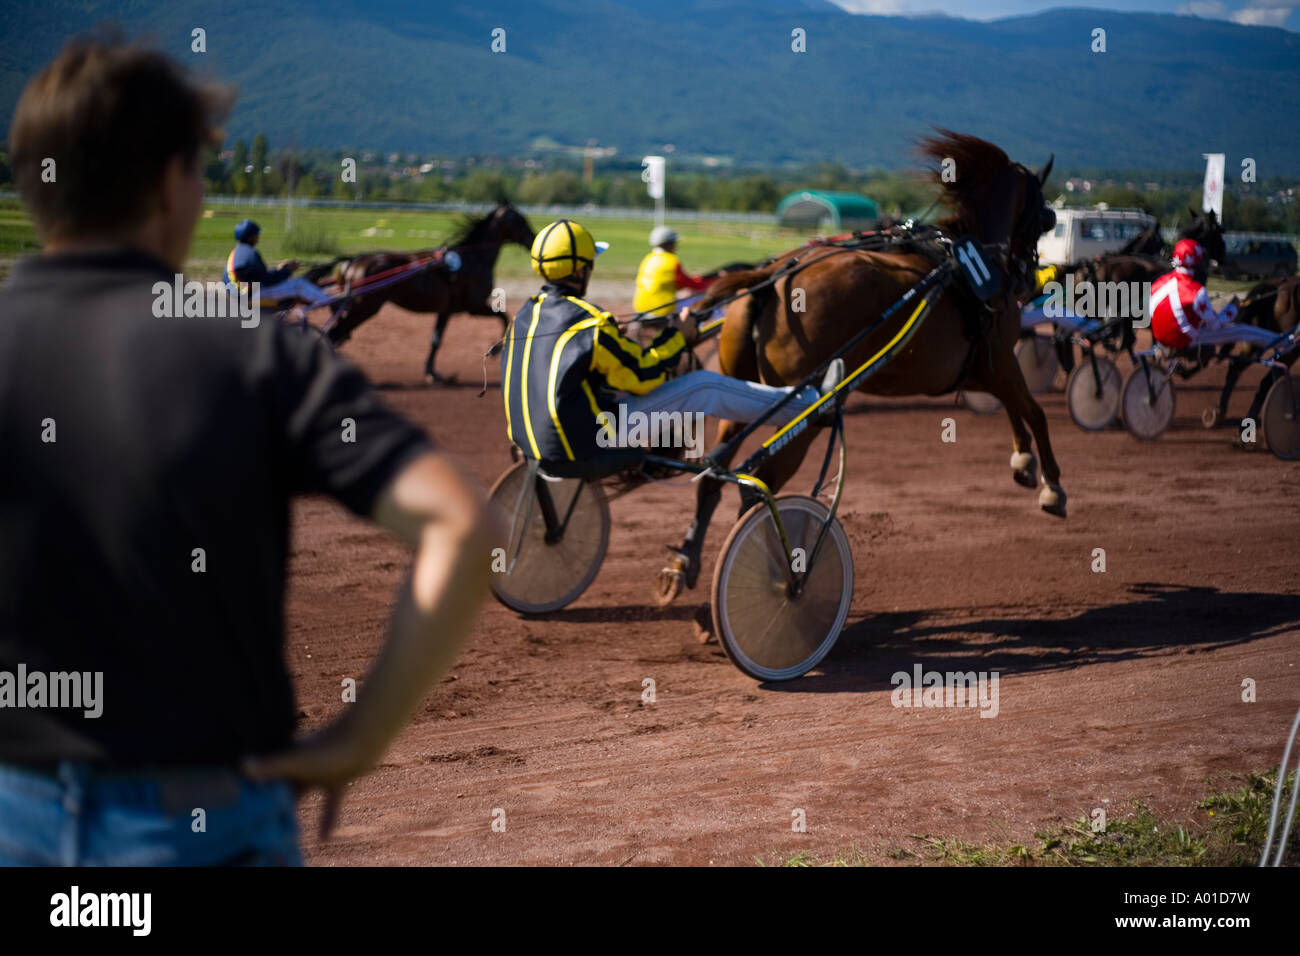 Trotto con un cavallo durante la riunione di Divonne Les Bains Foto Stock